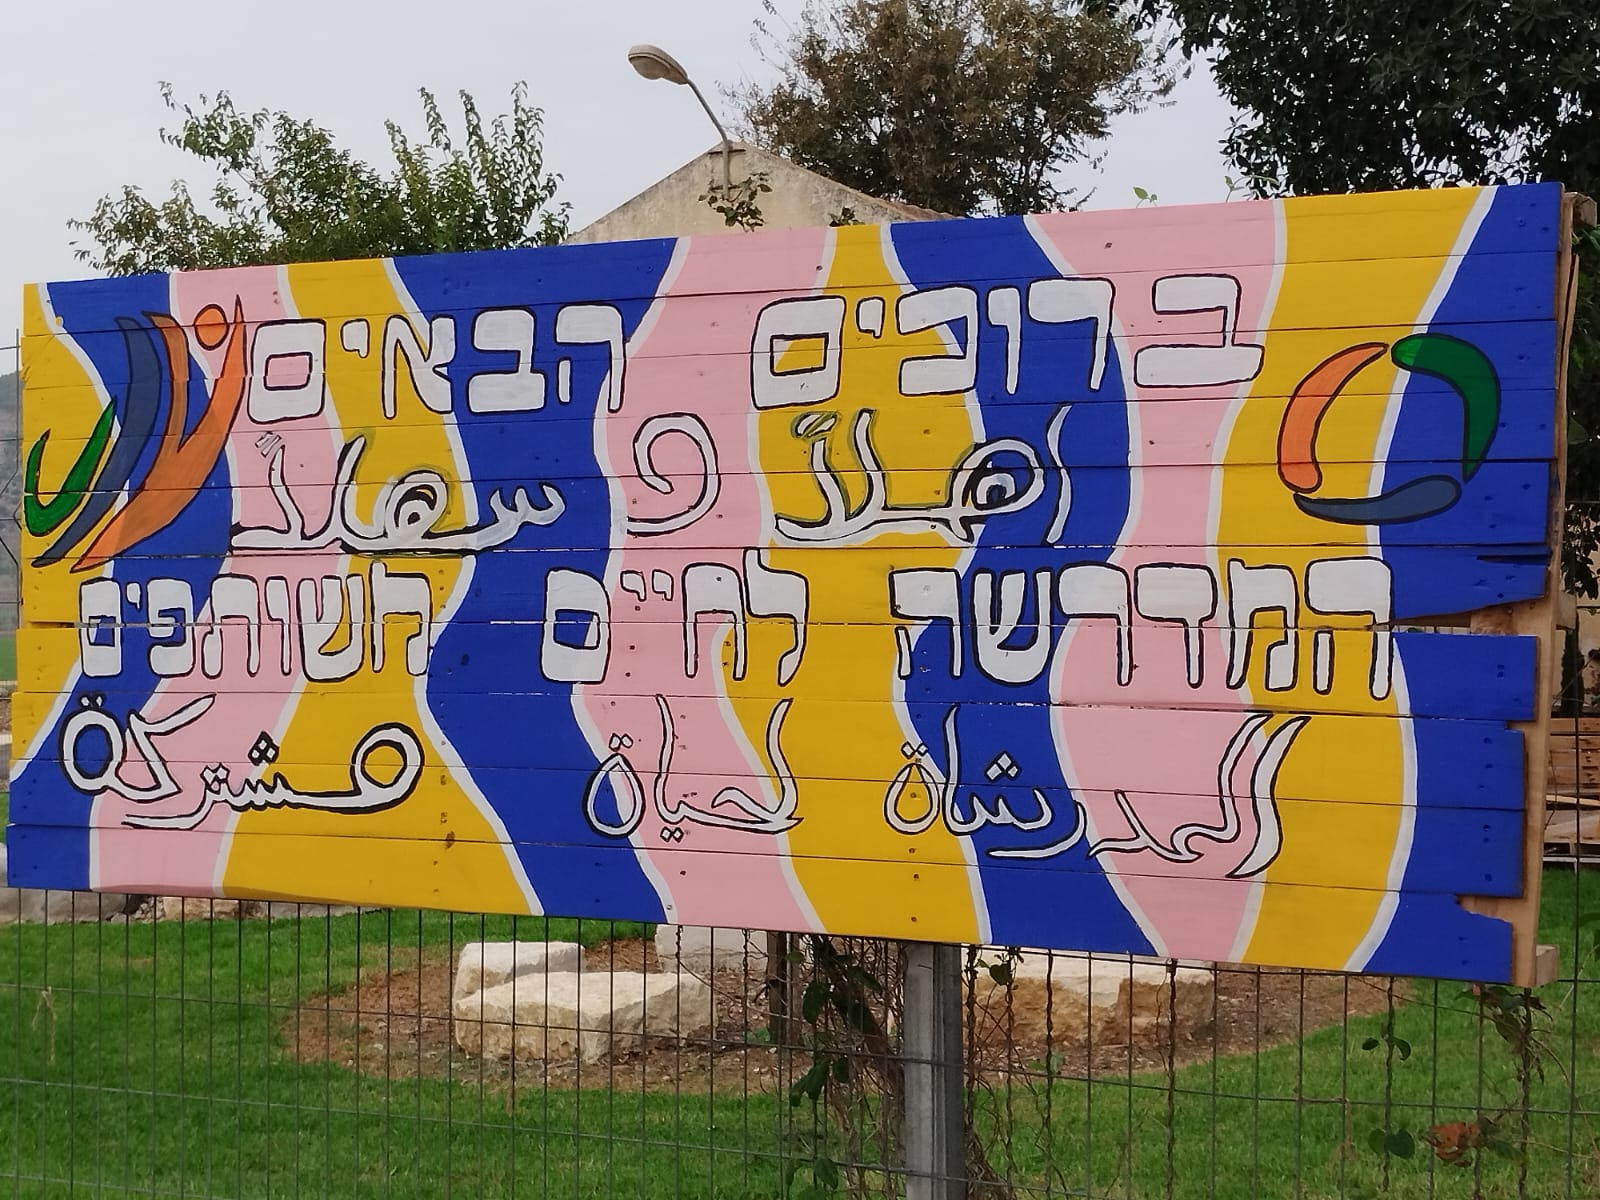 لافتة الدخول إلى المعهد. &quot;كل جملة تقال هنا بالعبرية تقال أيضا بالعربية، من منطلق مفهوم الشراكة الحقيقية&quot; (تصوير: يانيف شارون)